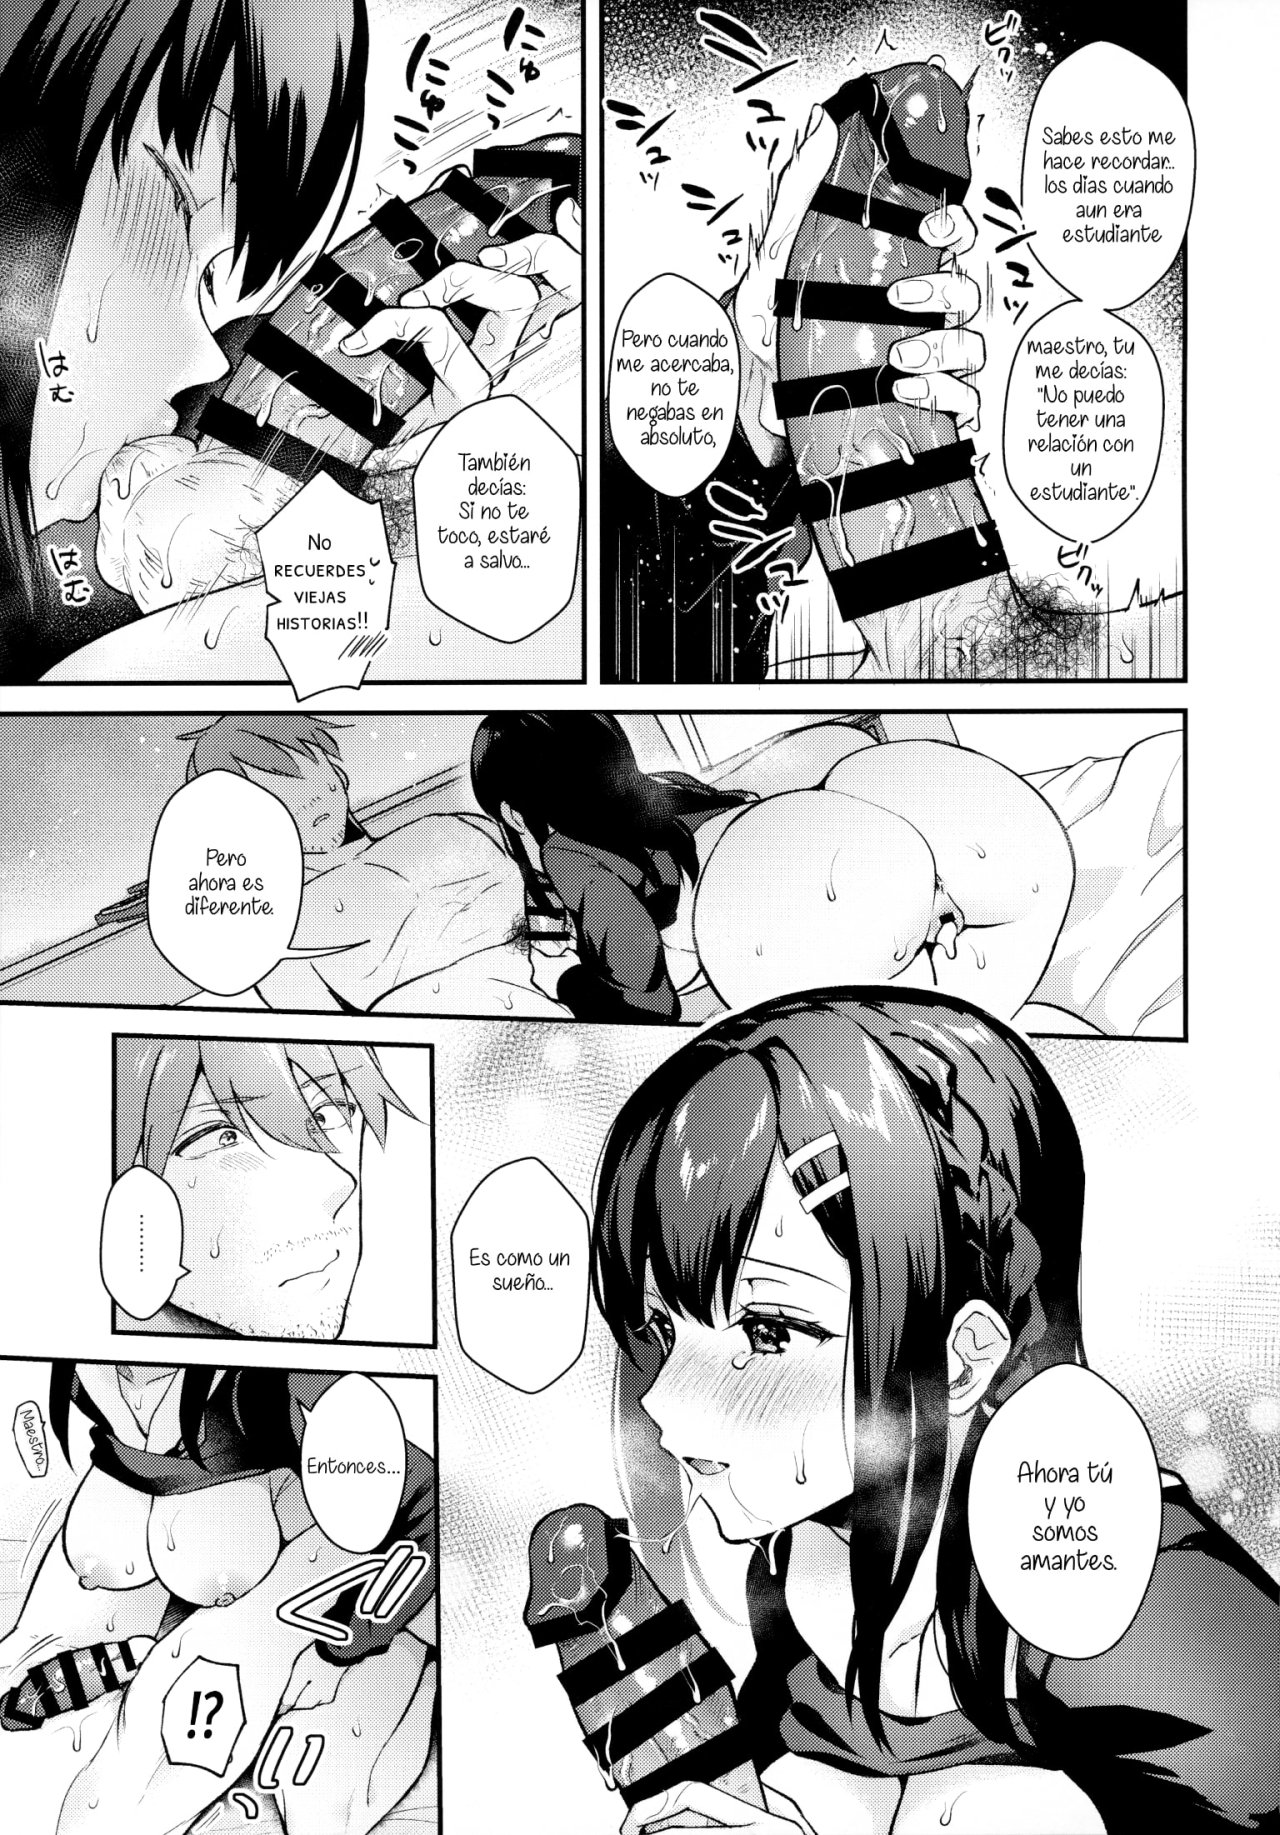 Sunshower-JK Miyako no Valentine Manga 3 - 27